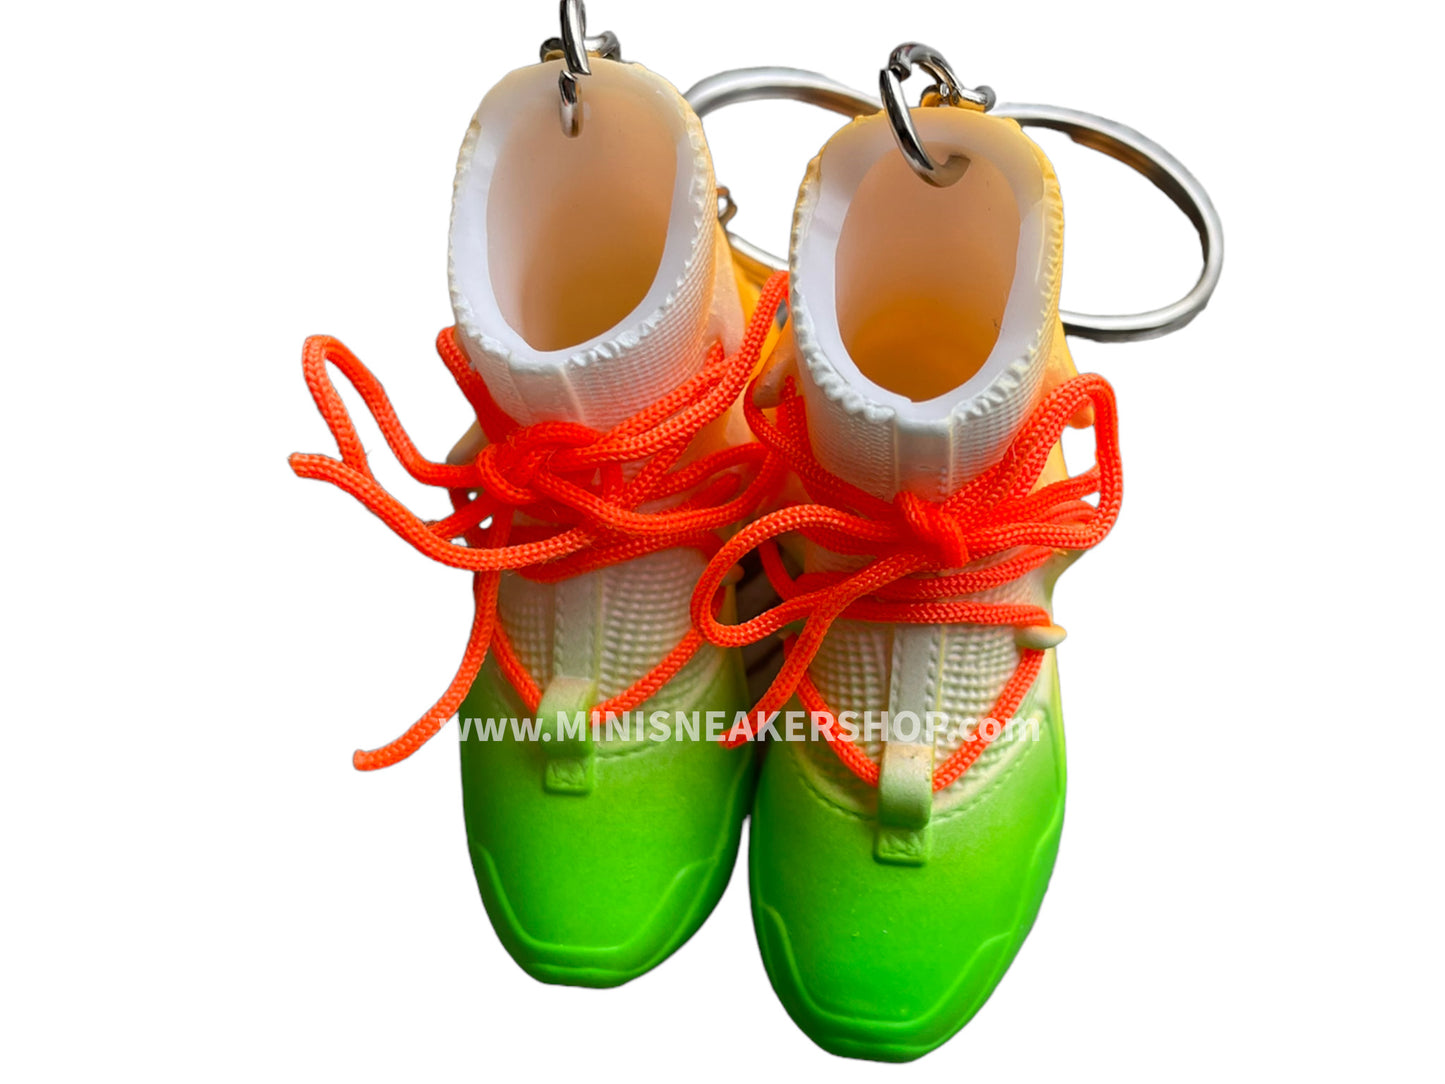 Mini 3D sneaker keychains FEAR OF G. Metallic multi